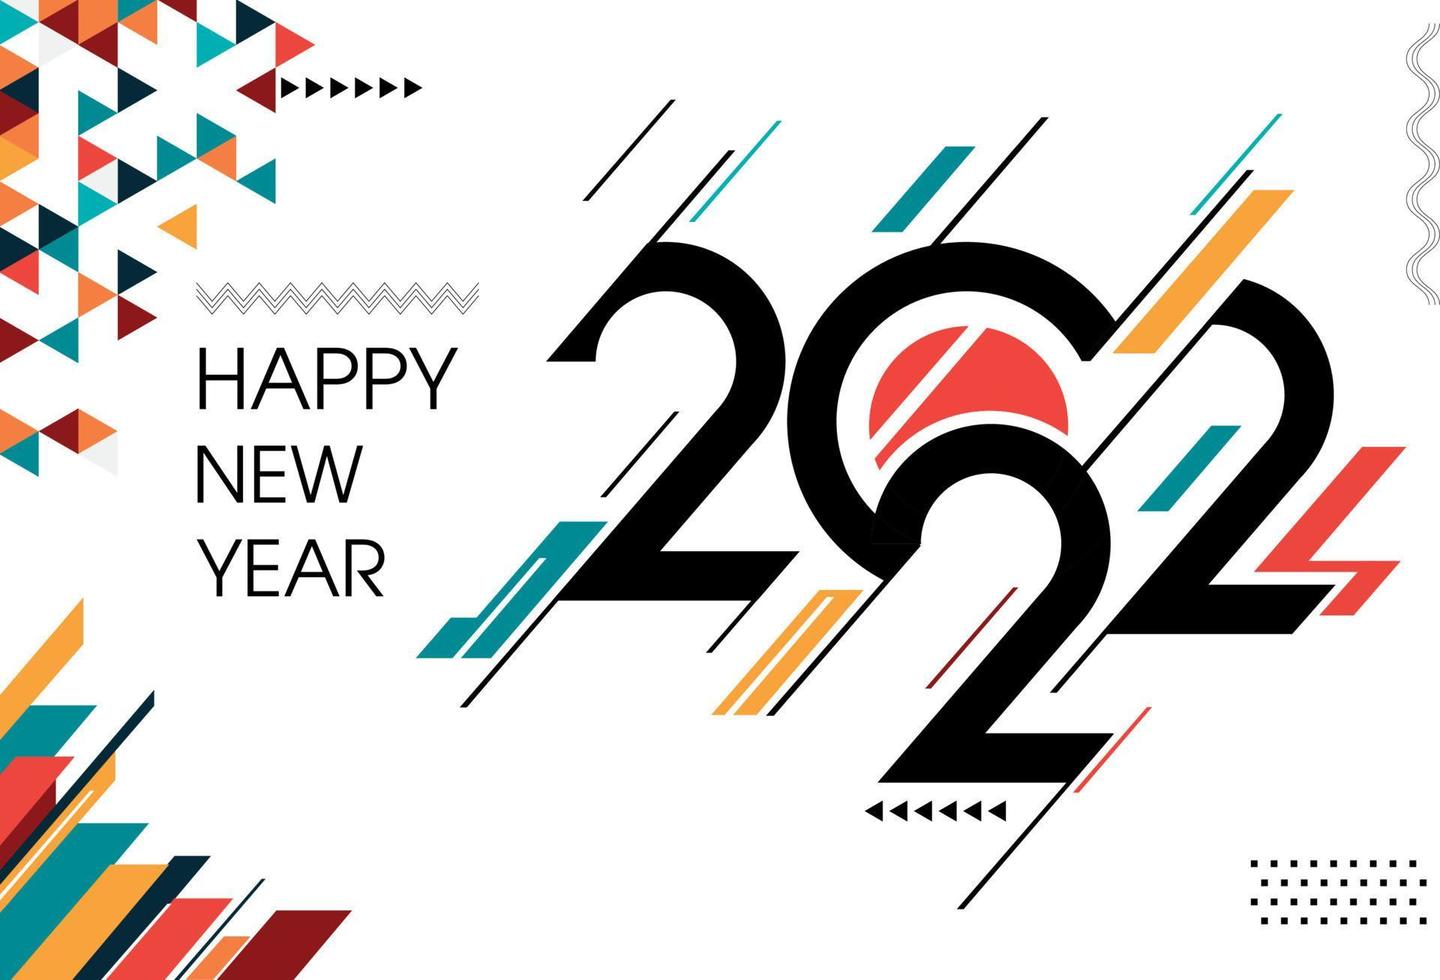 portada de feliz año nuevo 2022 con fondo abstracto geométrico moderno en estilo retro. El diseño de banner de tarjeta de felicitación de feliz año nuevo para la caligrafía 2022 incluye formas coloridas. ilustración vectorial vector